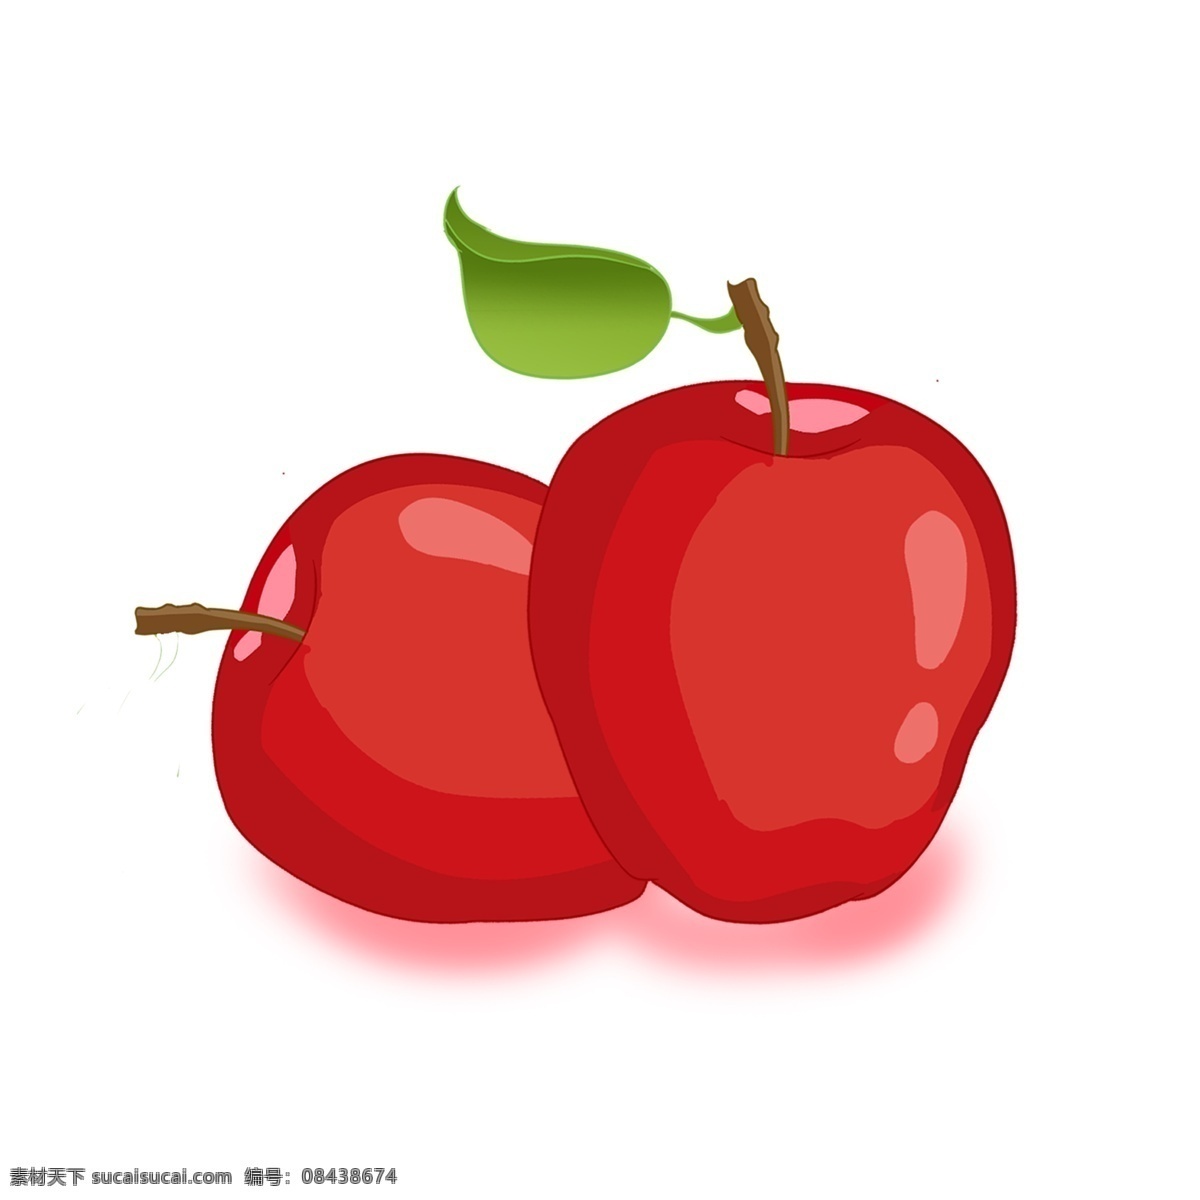 花牛 苹果 中国 风 红色 手绘 水果 绿色 蛇果 两个 整个 深红色 叶子 浅色 粉色 晕染 贴画